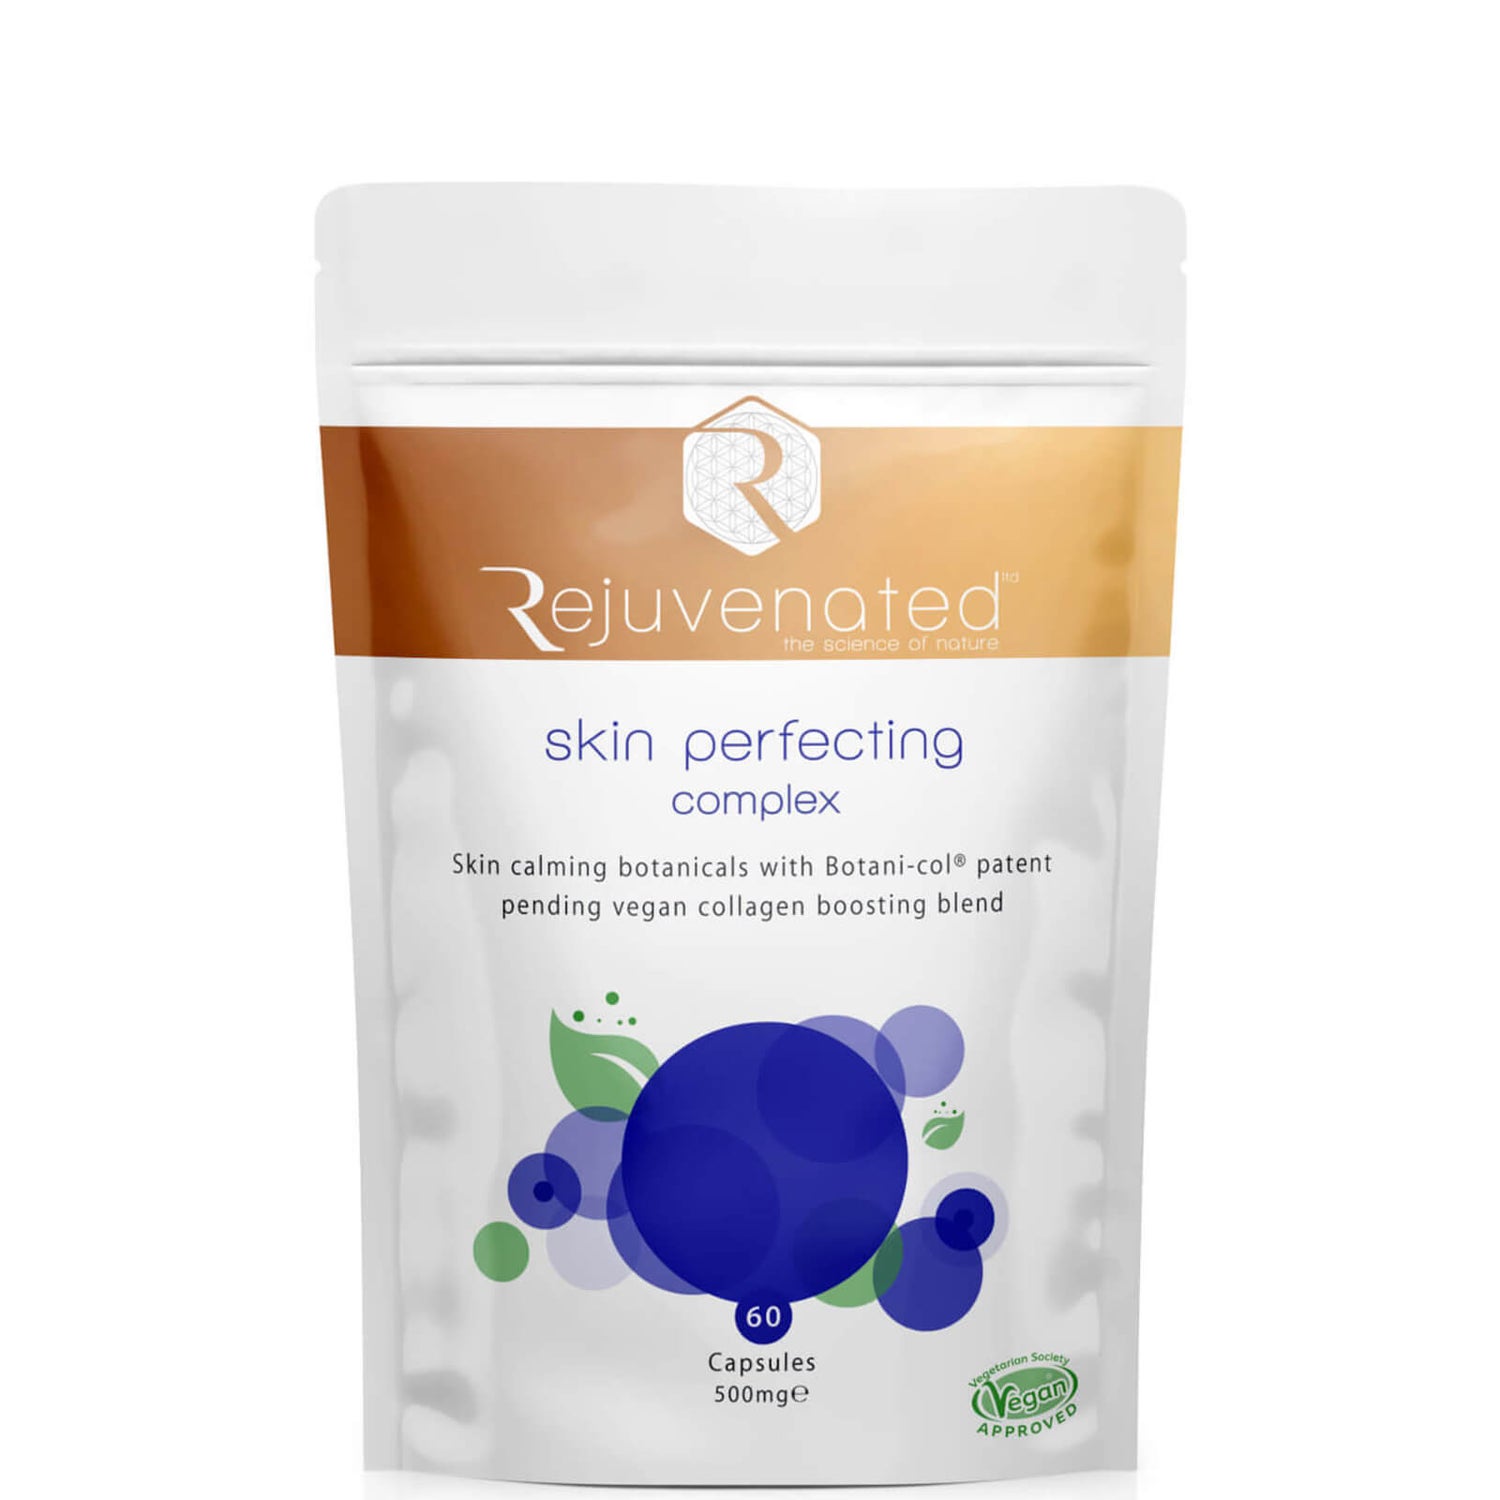 Rejuvenated Ltd Skin Perfecting Complex - 60 Capsules